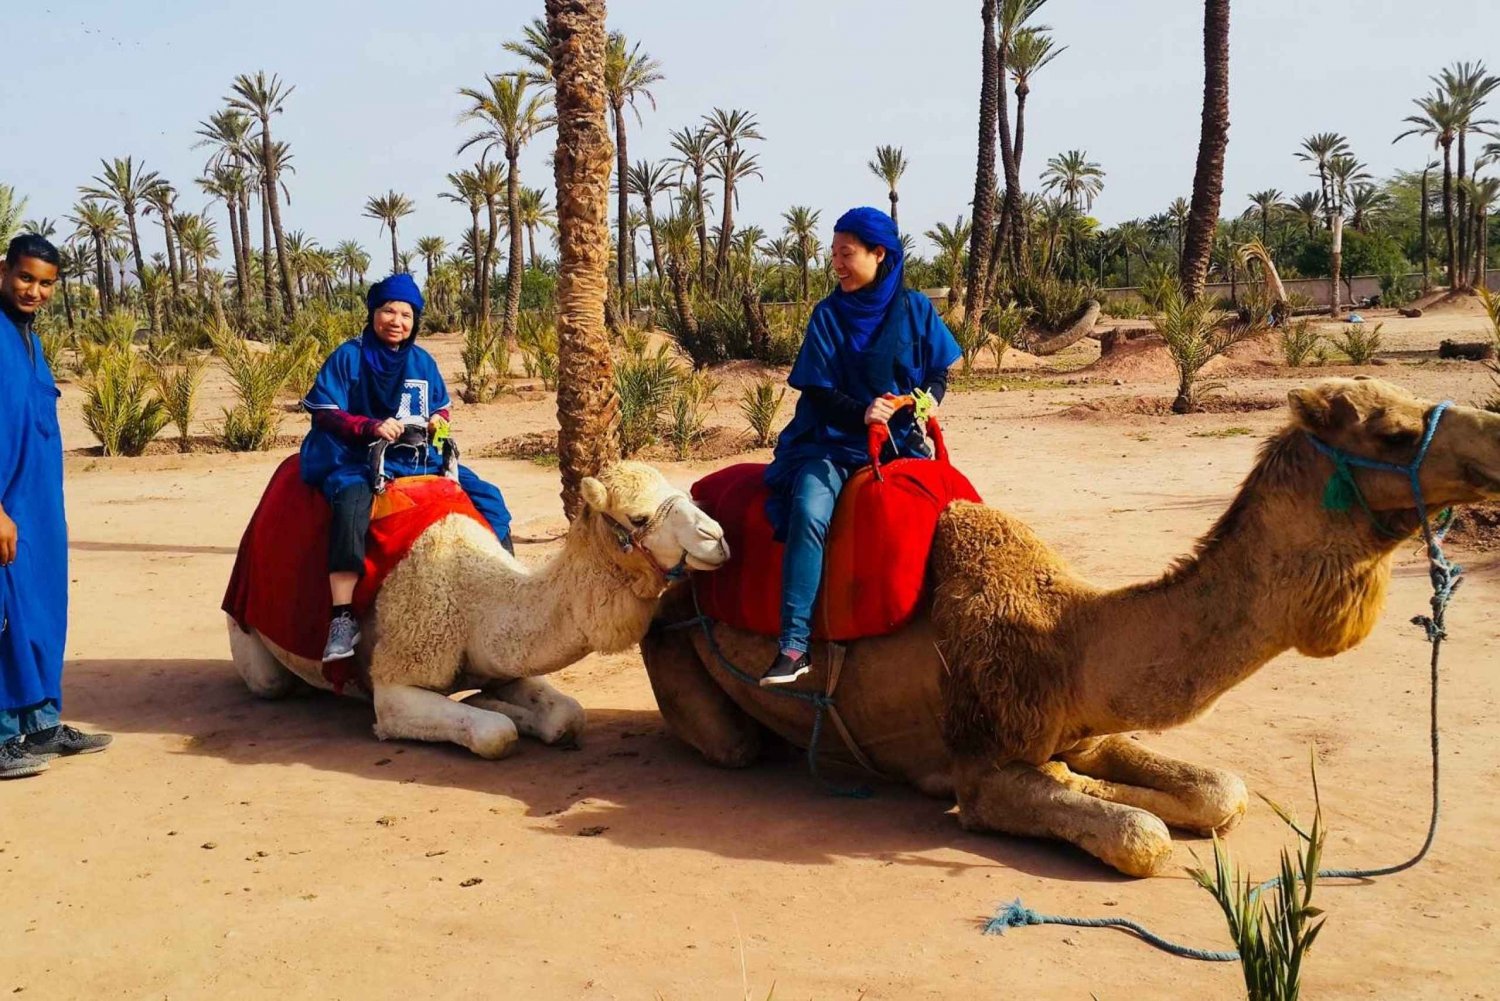 Palmeraie di Marrakech: giro in cammello e attività in quad